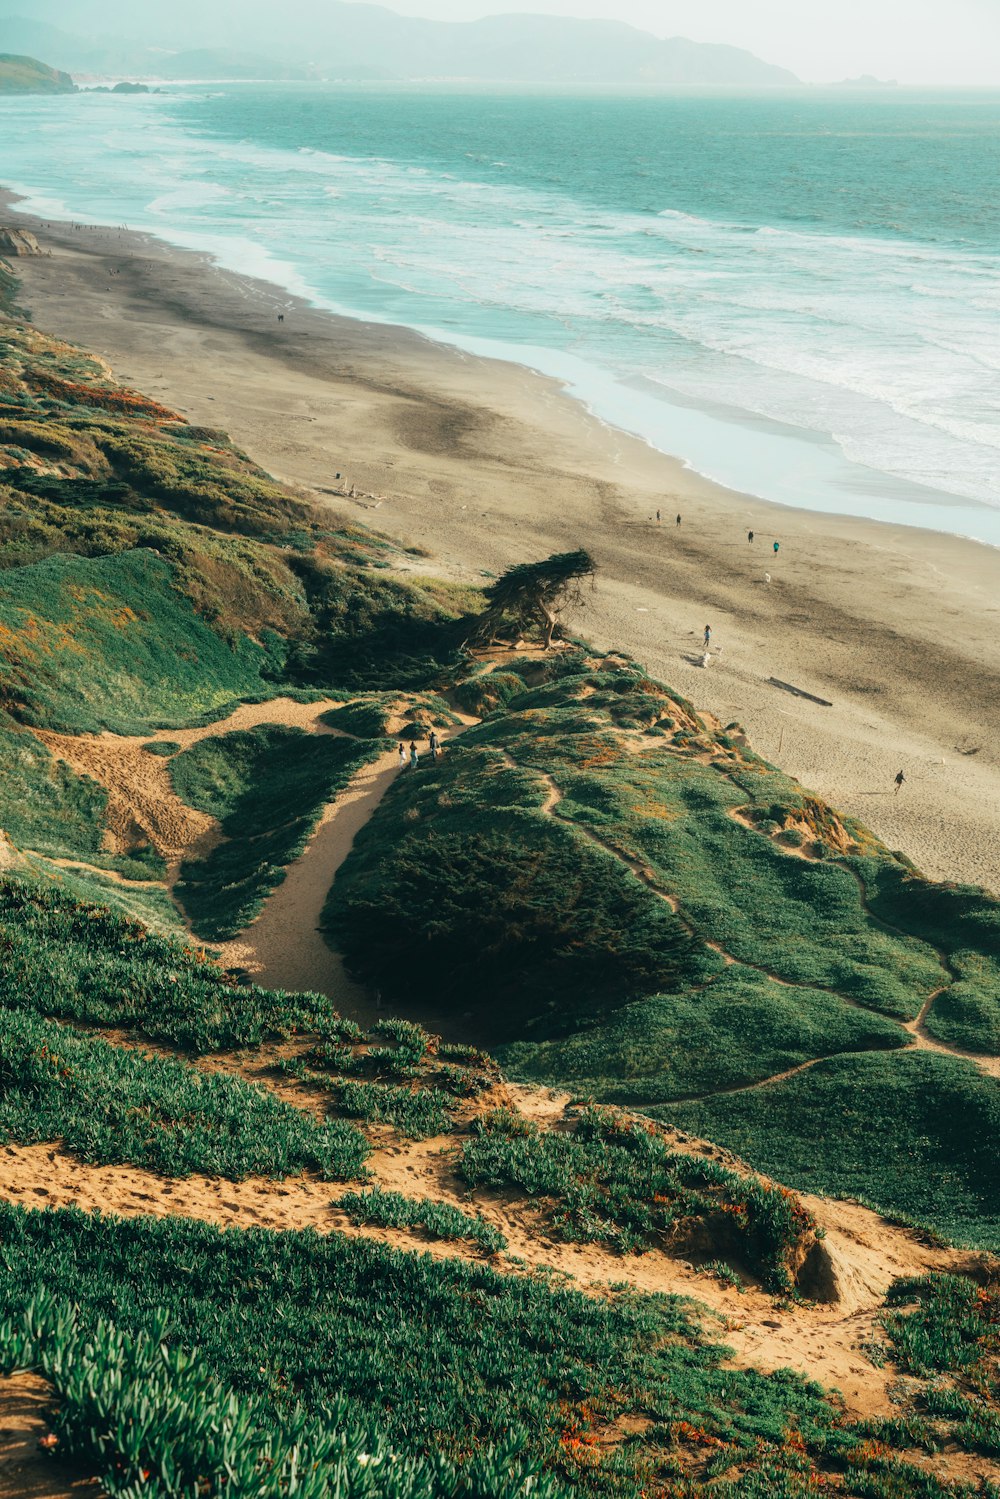 Una vista de una playa de arena y el océano desde una colina